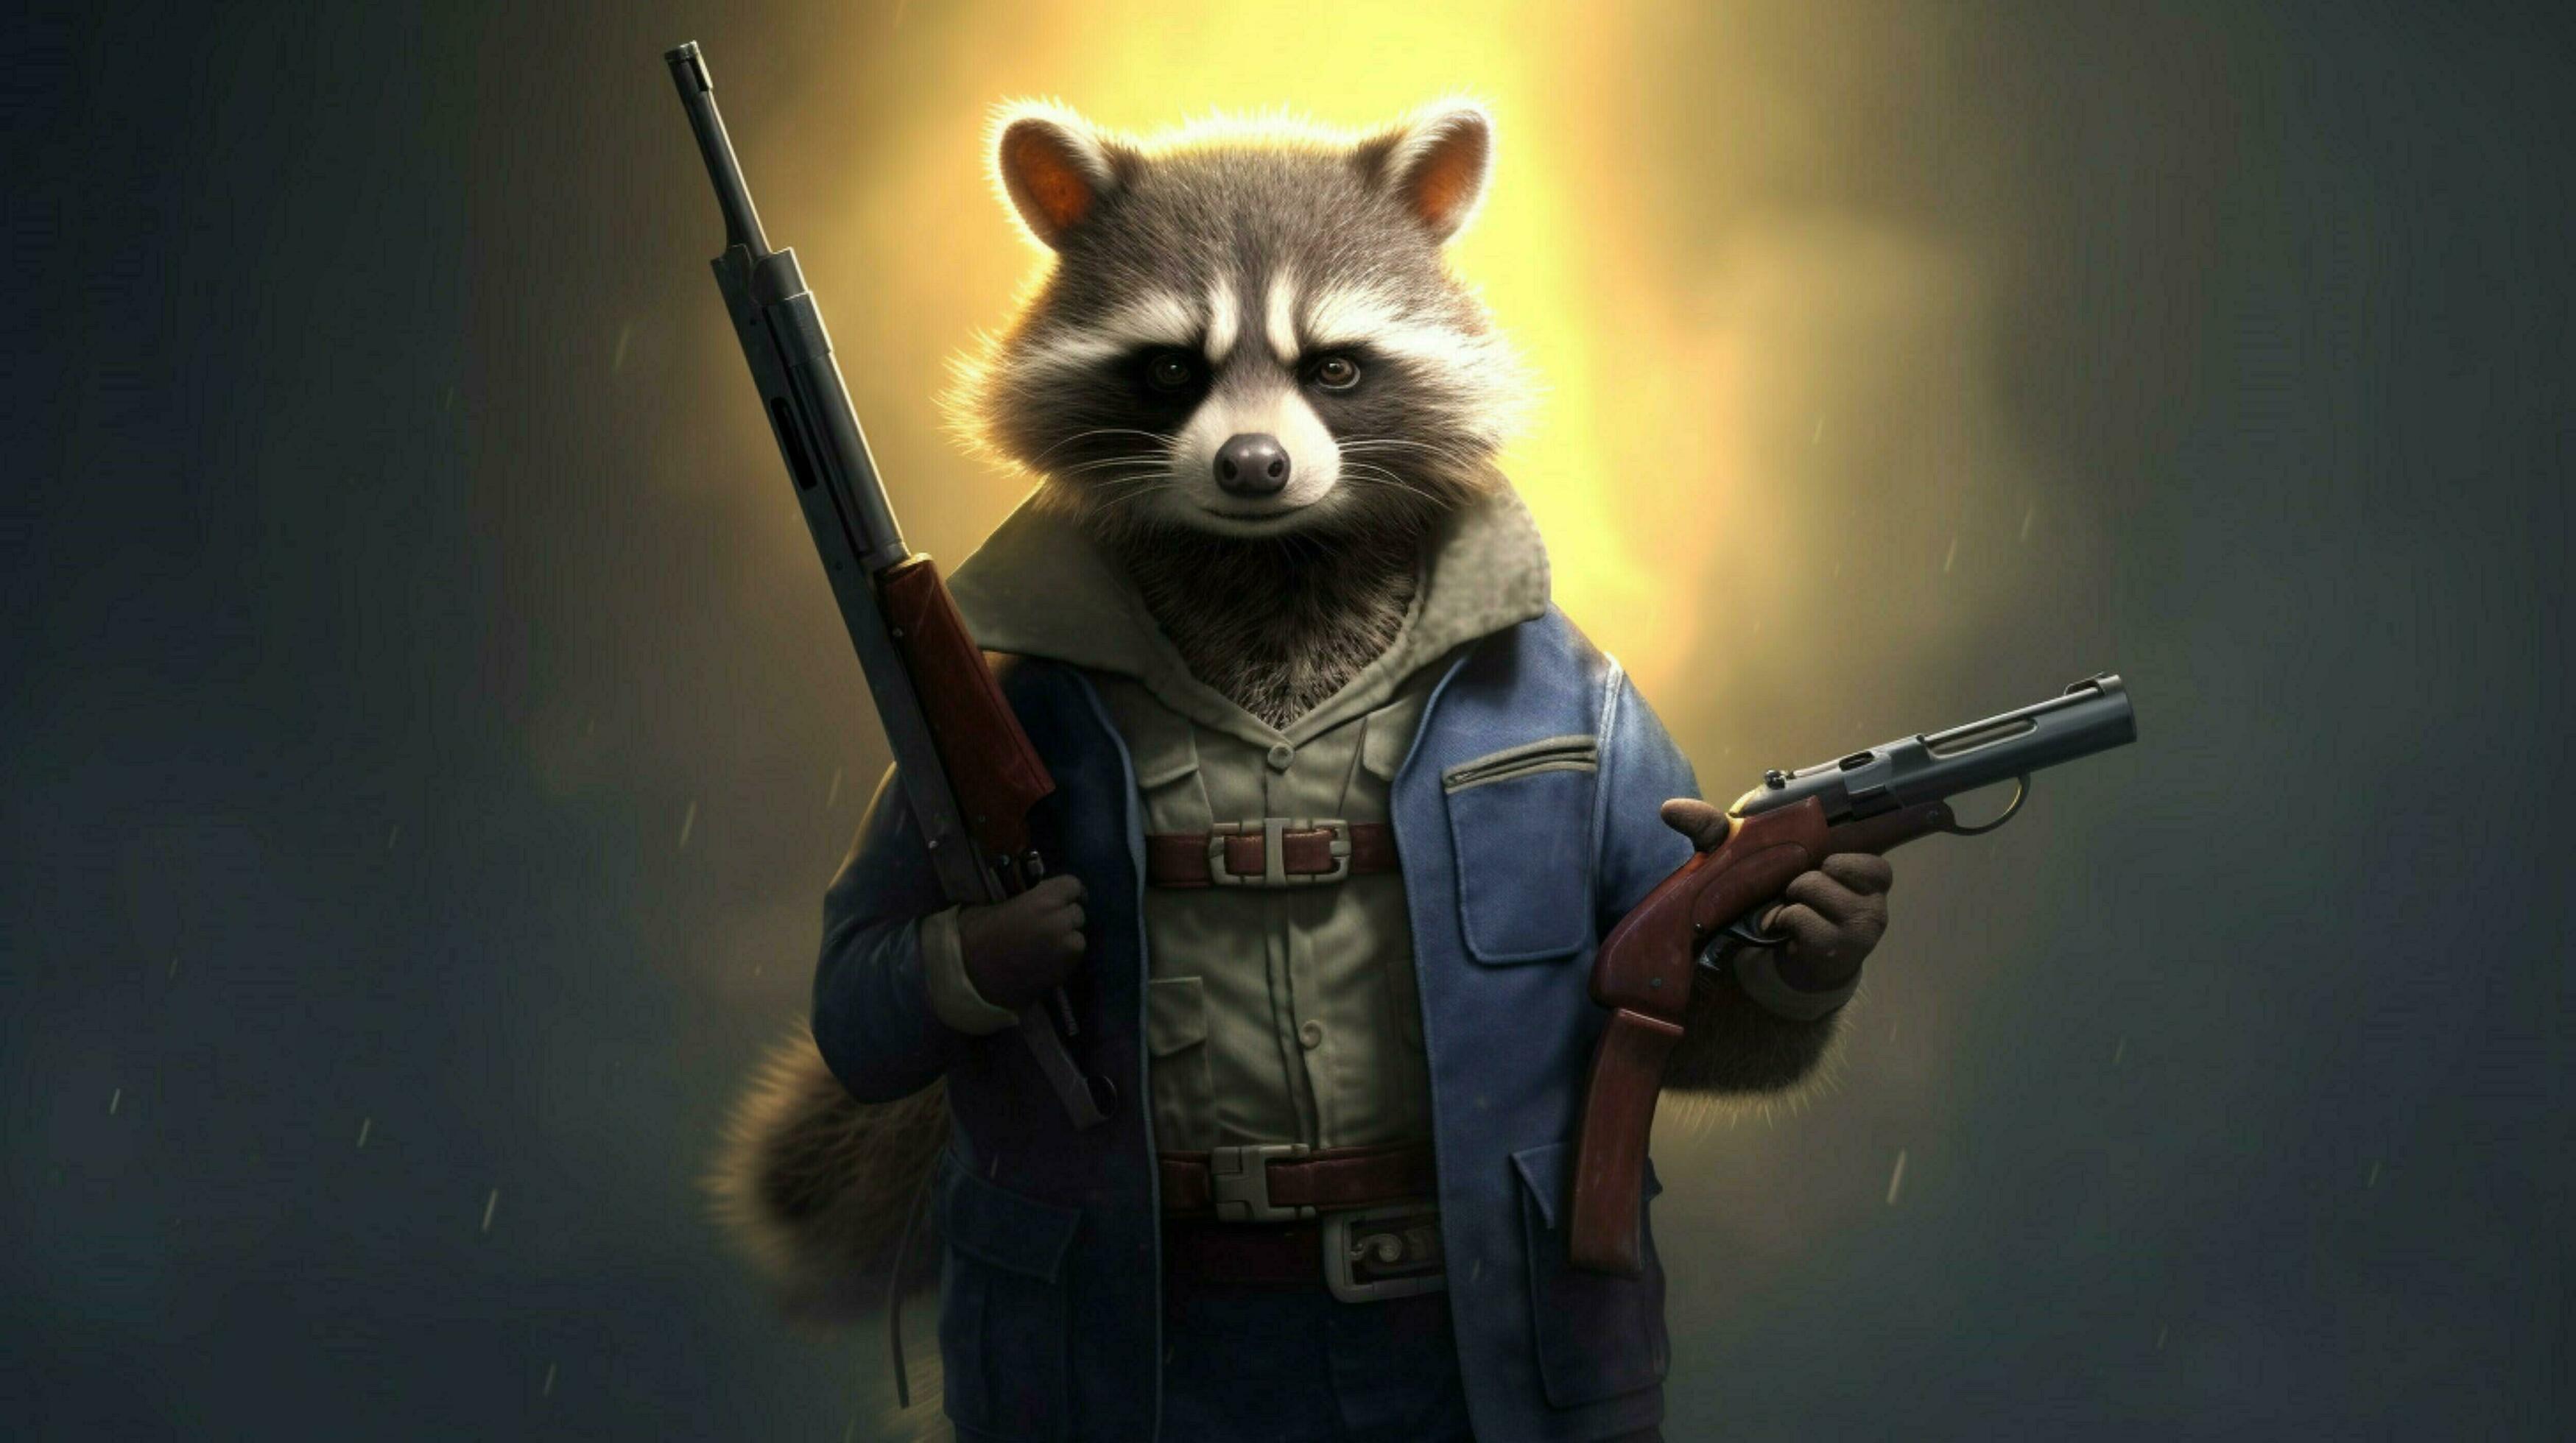 a-cartoon-of-a-raccoon-with-a-gun-in-his-hand-free-photo.jpg